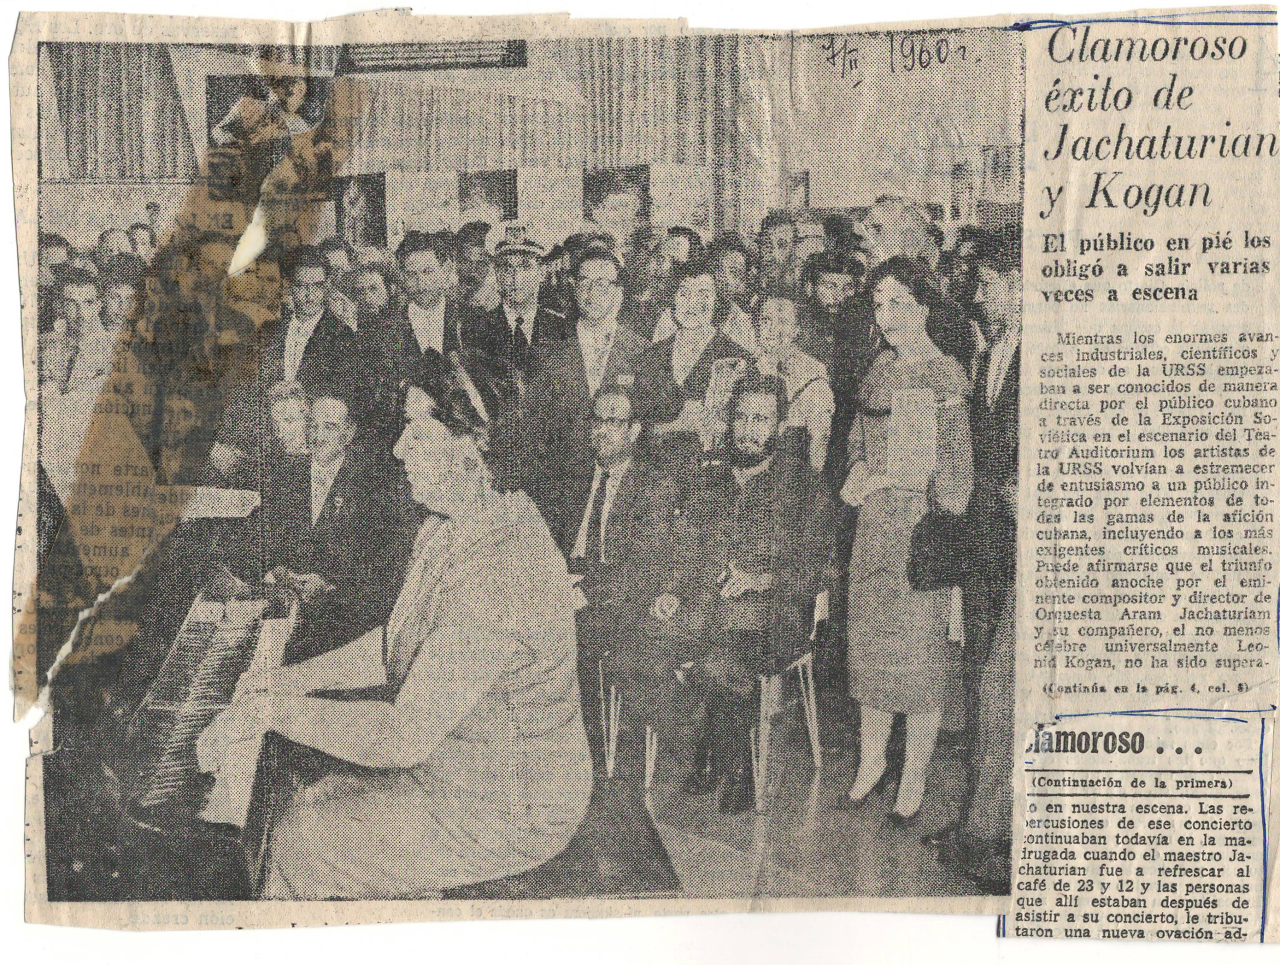 Գրառում կուբայական  թերթից՝ Սովետական Միությունից ժամանած արտիստների Կուբայում գտնվելու մասին 